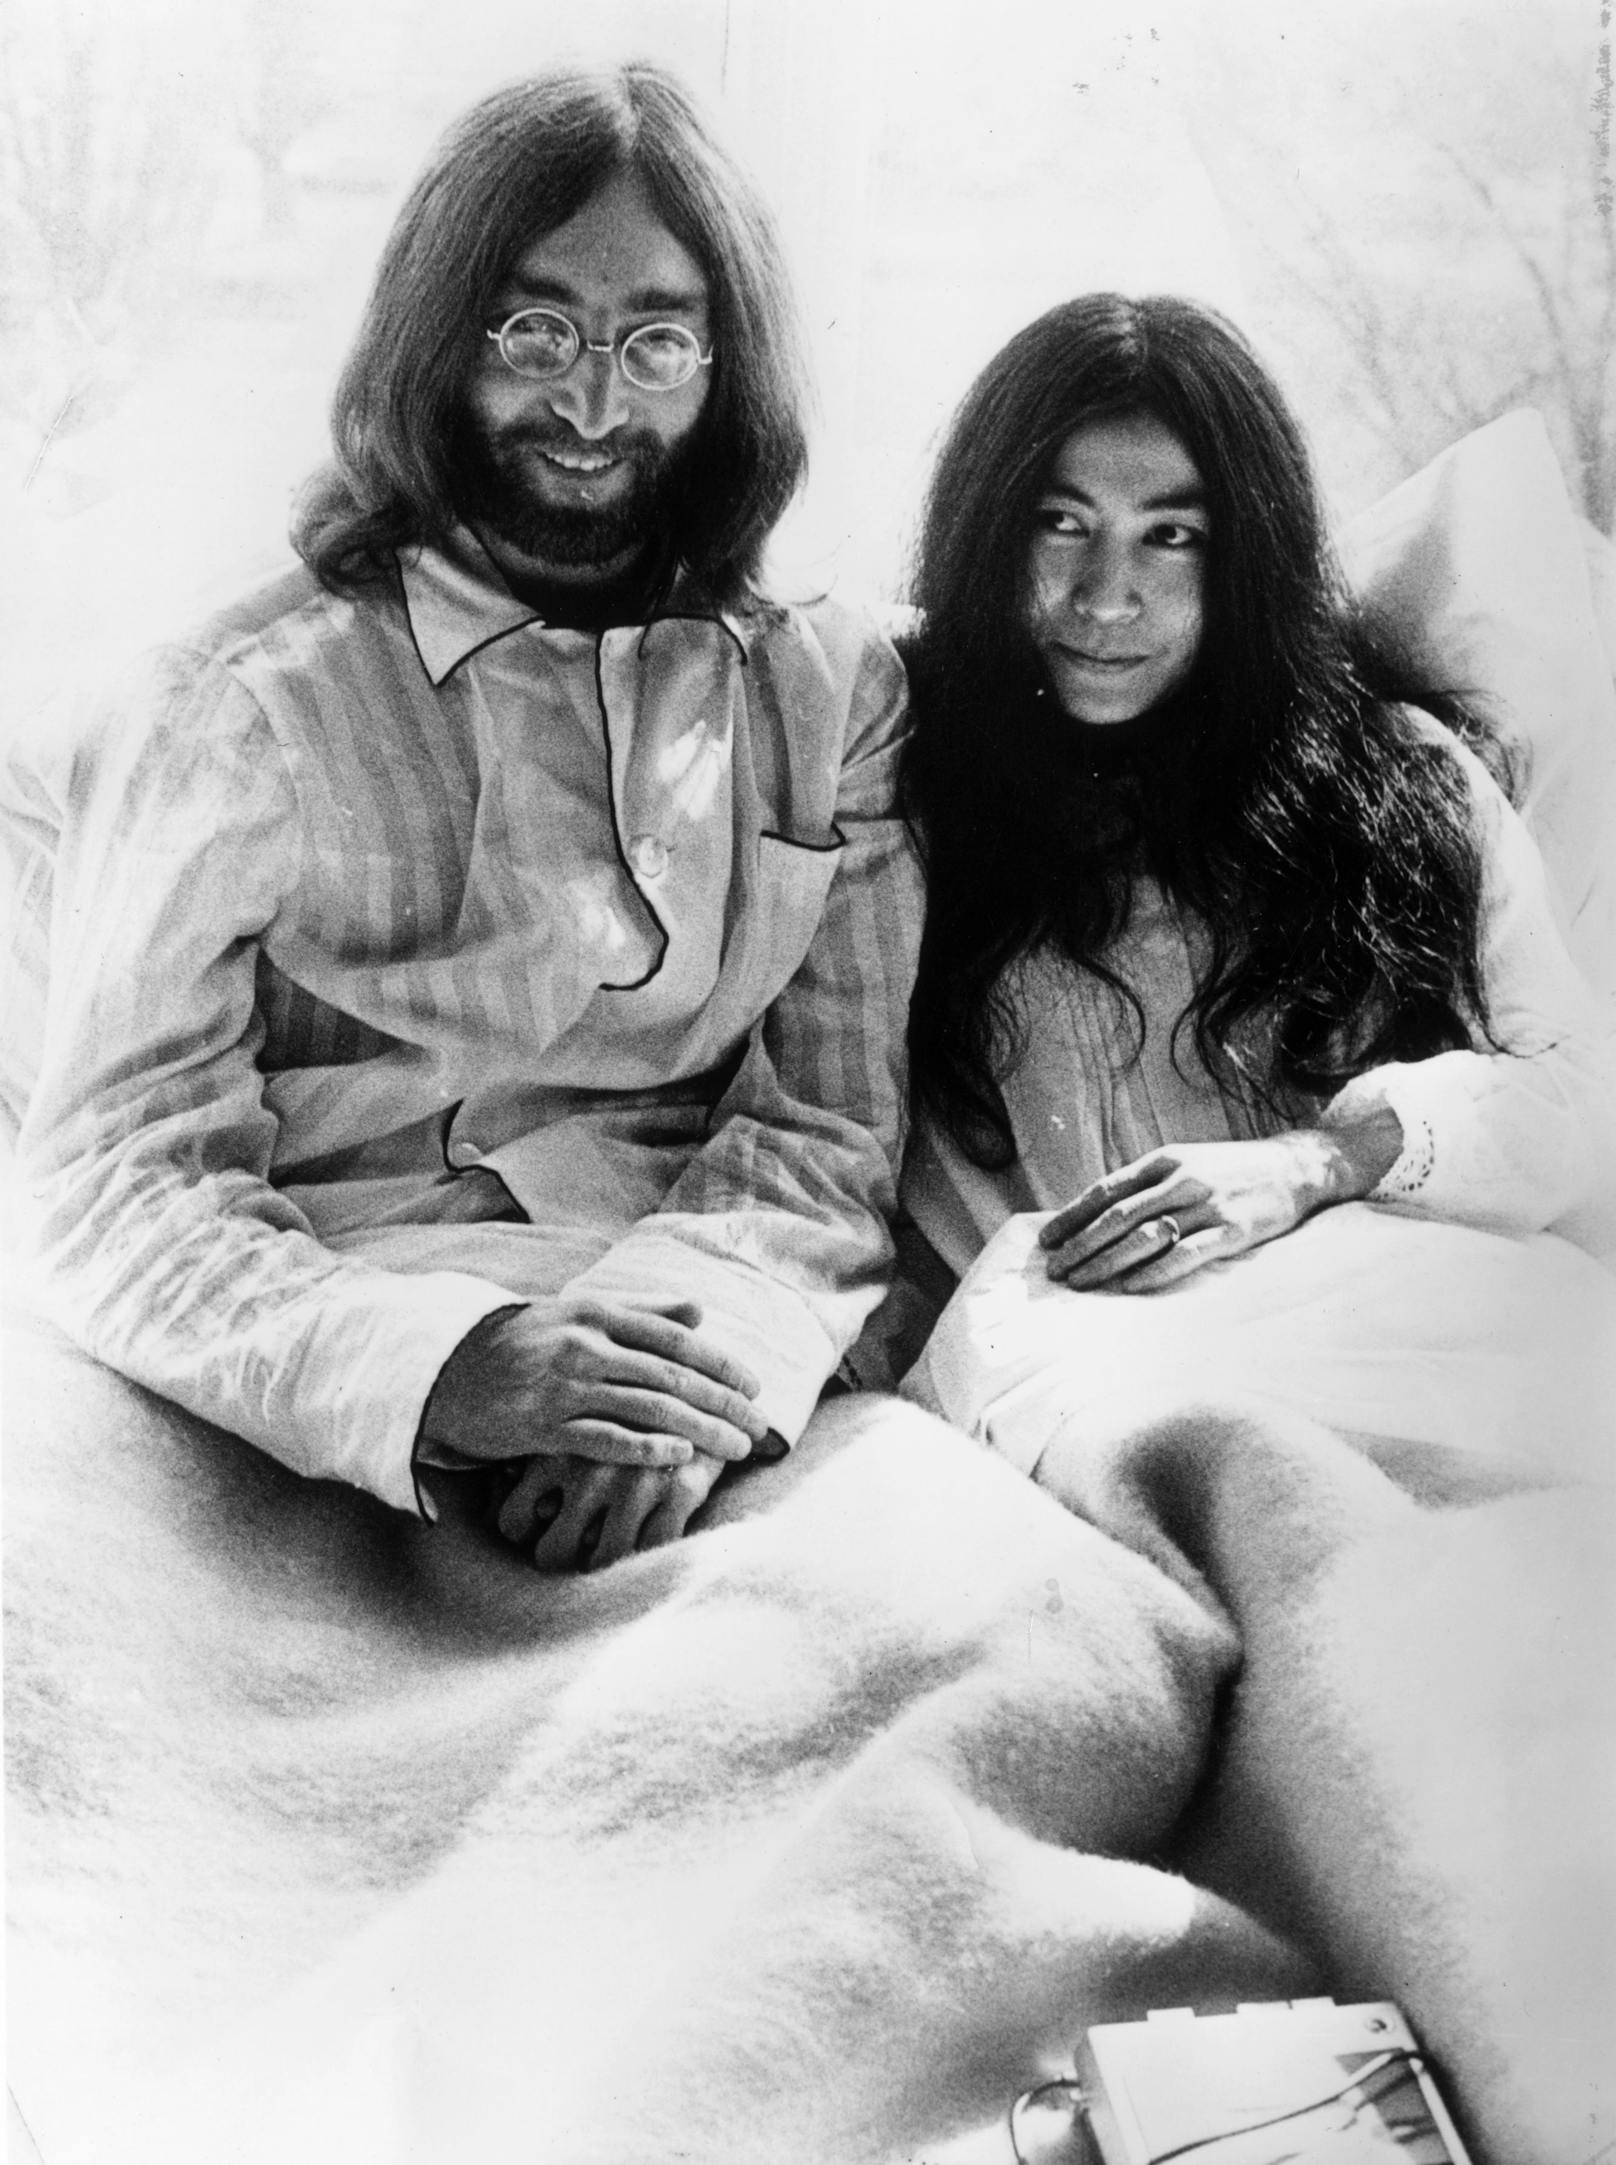 Am 20. März 1969 heirateten John Lennon und Yoko Ono in Gibraltar. Am 31. März 1969 beendete das Paar in der Apollobuurt in Amsterdam sein einwöchiges "Bed-in".